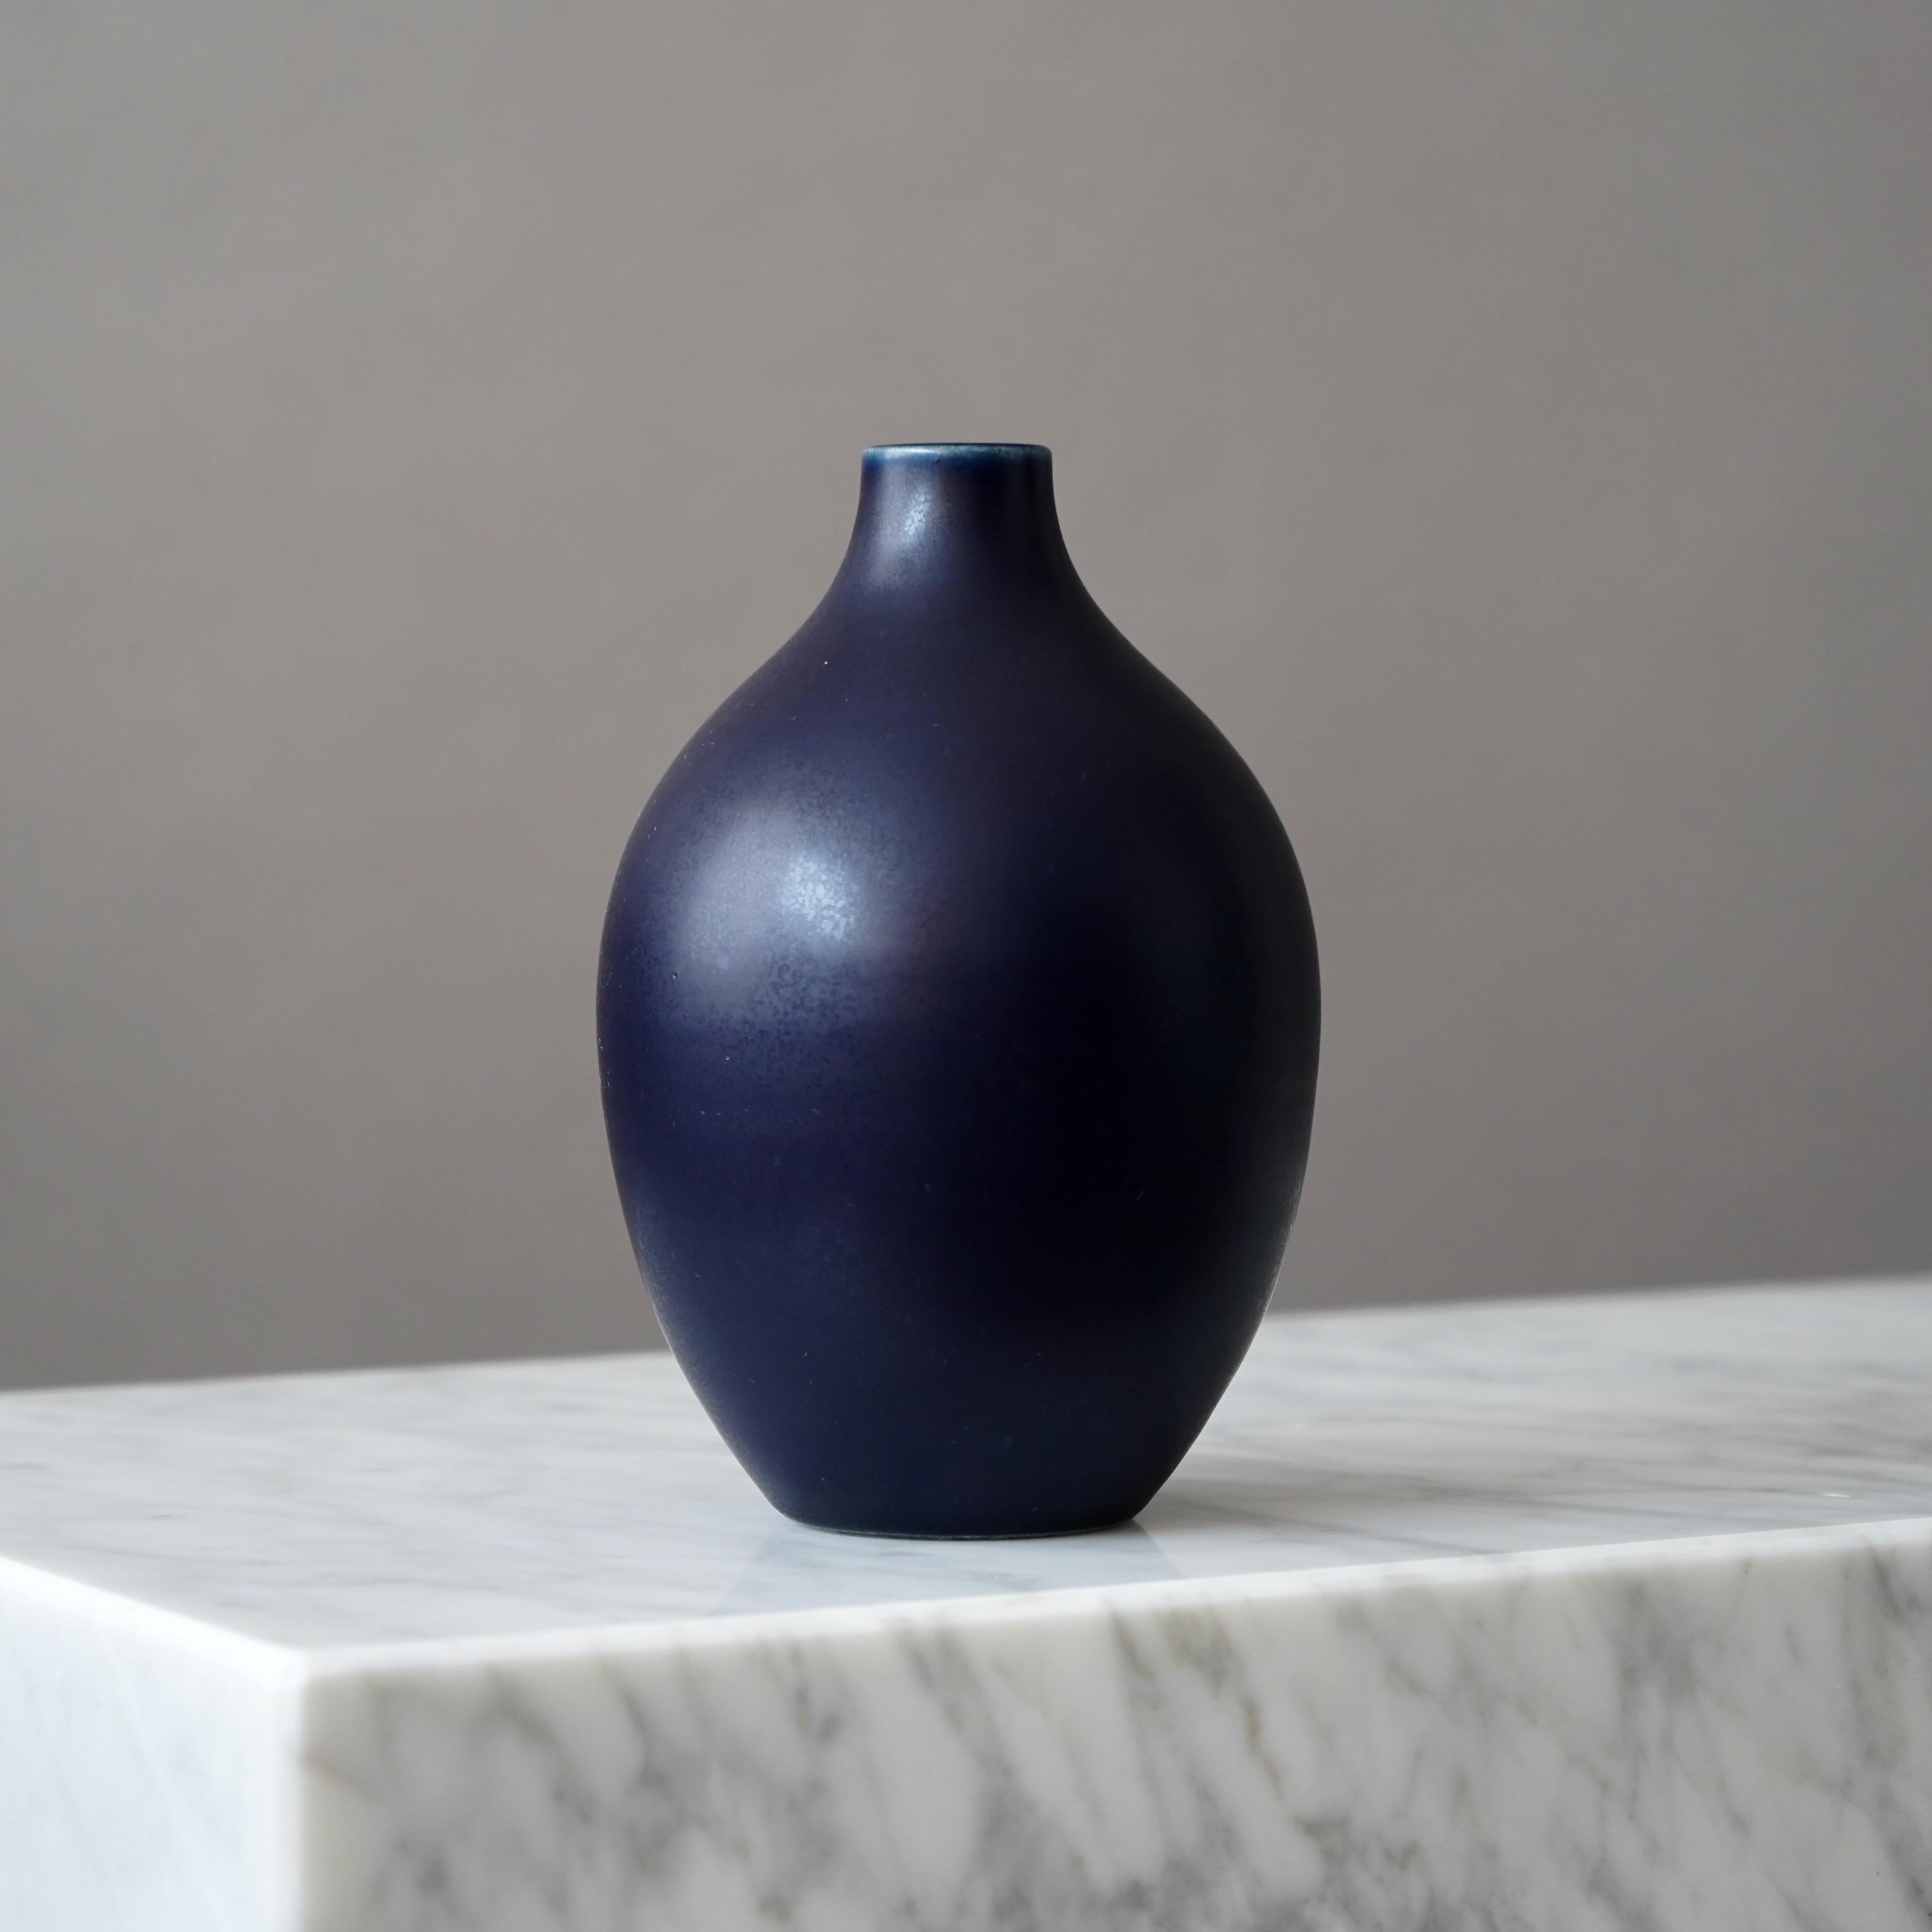 Precioso jarrón de gres fabricado por los maestros ceramistas Erich and Ingrid Triller.
Esta pieza fue creada en su taller de Tobo, Suecia, en la década de 1950.

Gran estado, con un pequeño punto blanco en el esmalte (en la foto). 
Firmado en la